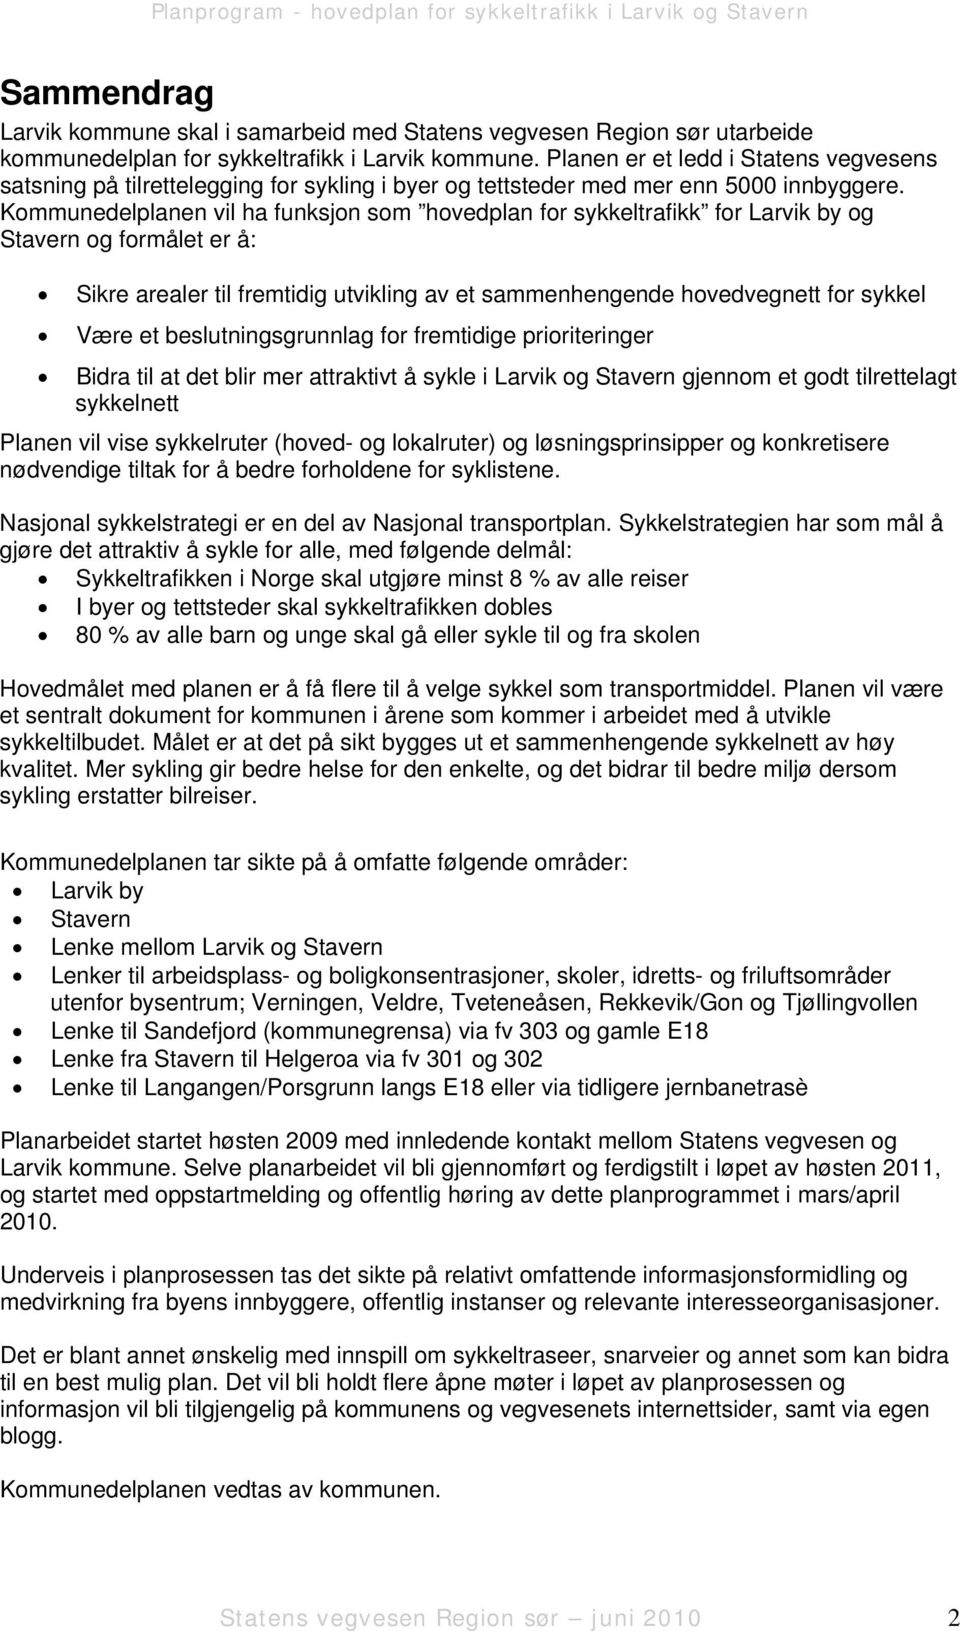 Kommunedelplanen vil ha funksjon som hovedplan for sykkeltrafikk for Larvik by og Stavern og formålet er å: Sikre arealer til fremtidig utvikling av et sammenhengende hovedvegnett for sykkel Være et